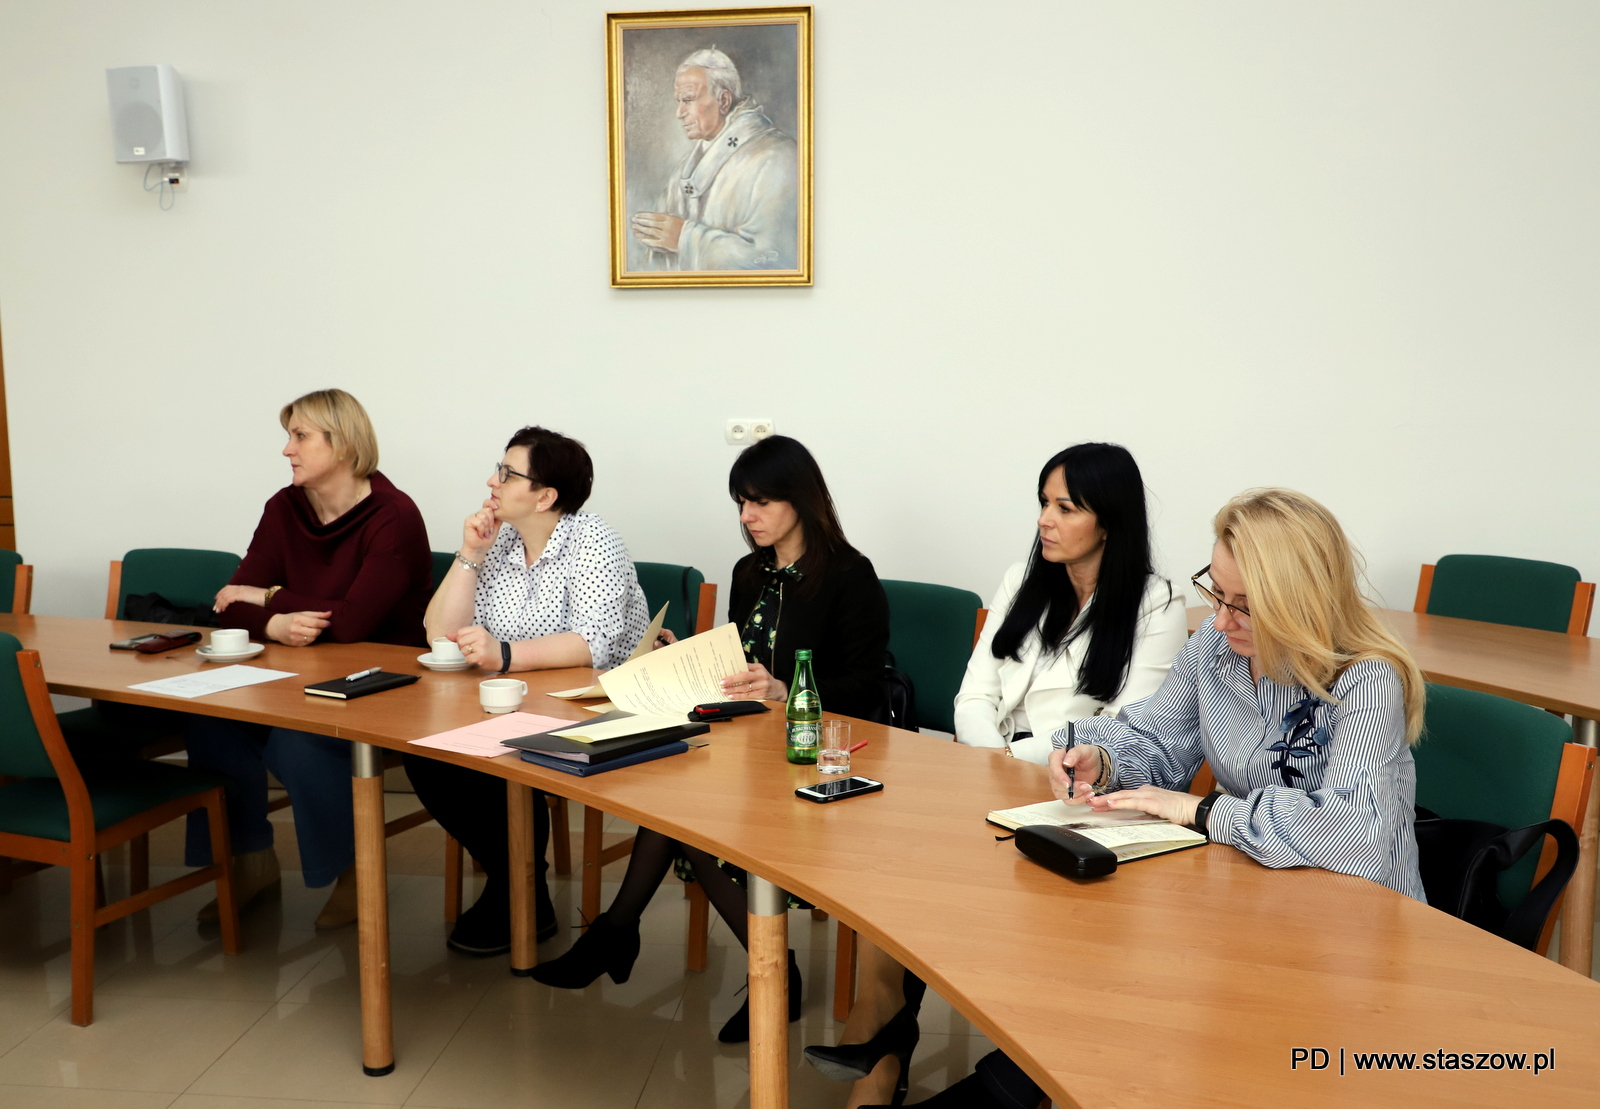  VI sesja Młodzieżowej Rady Miejskiej w Staszowie